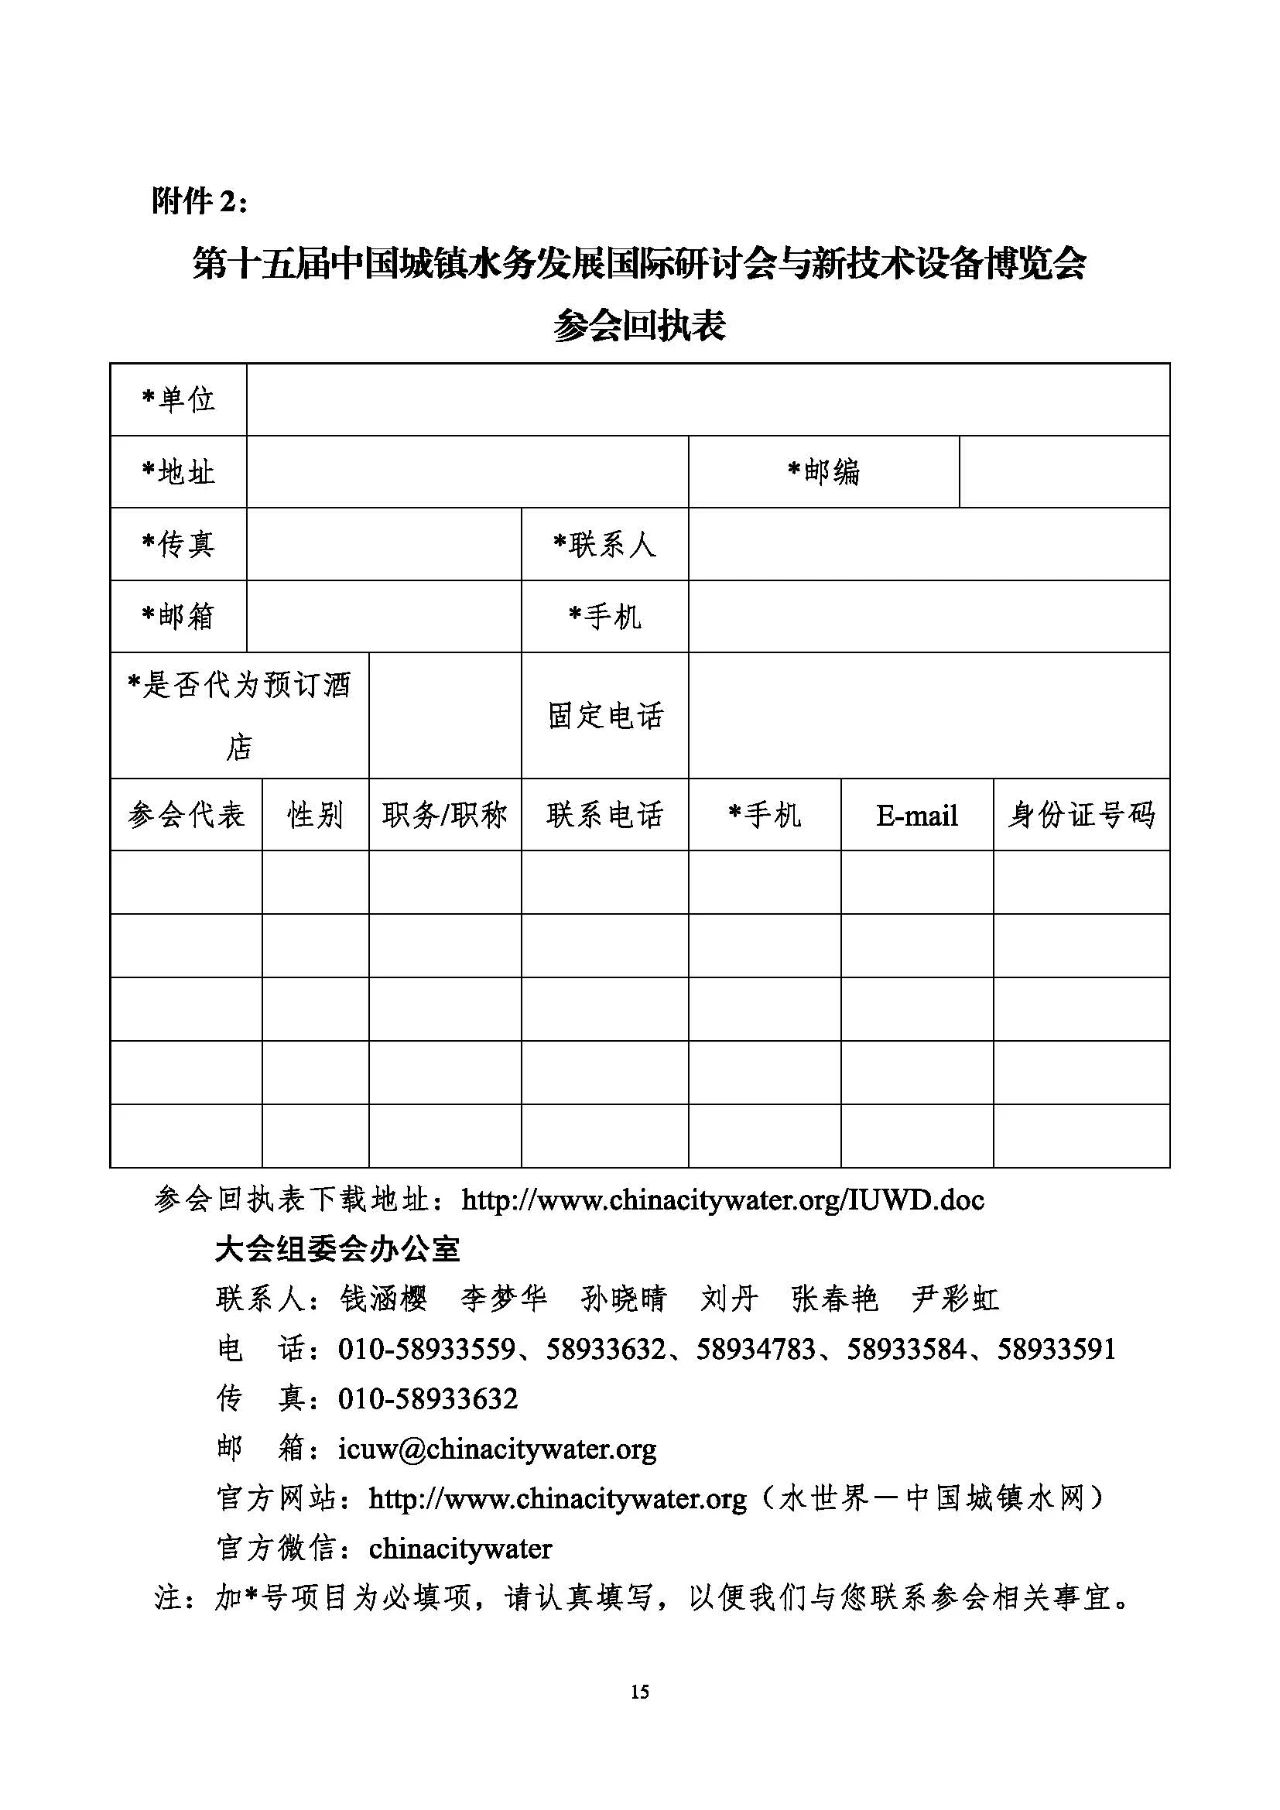 第十五届中国城镇水务大会与博览会将在杭州召开！(图15)